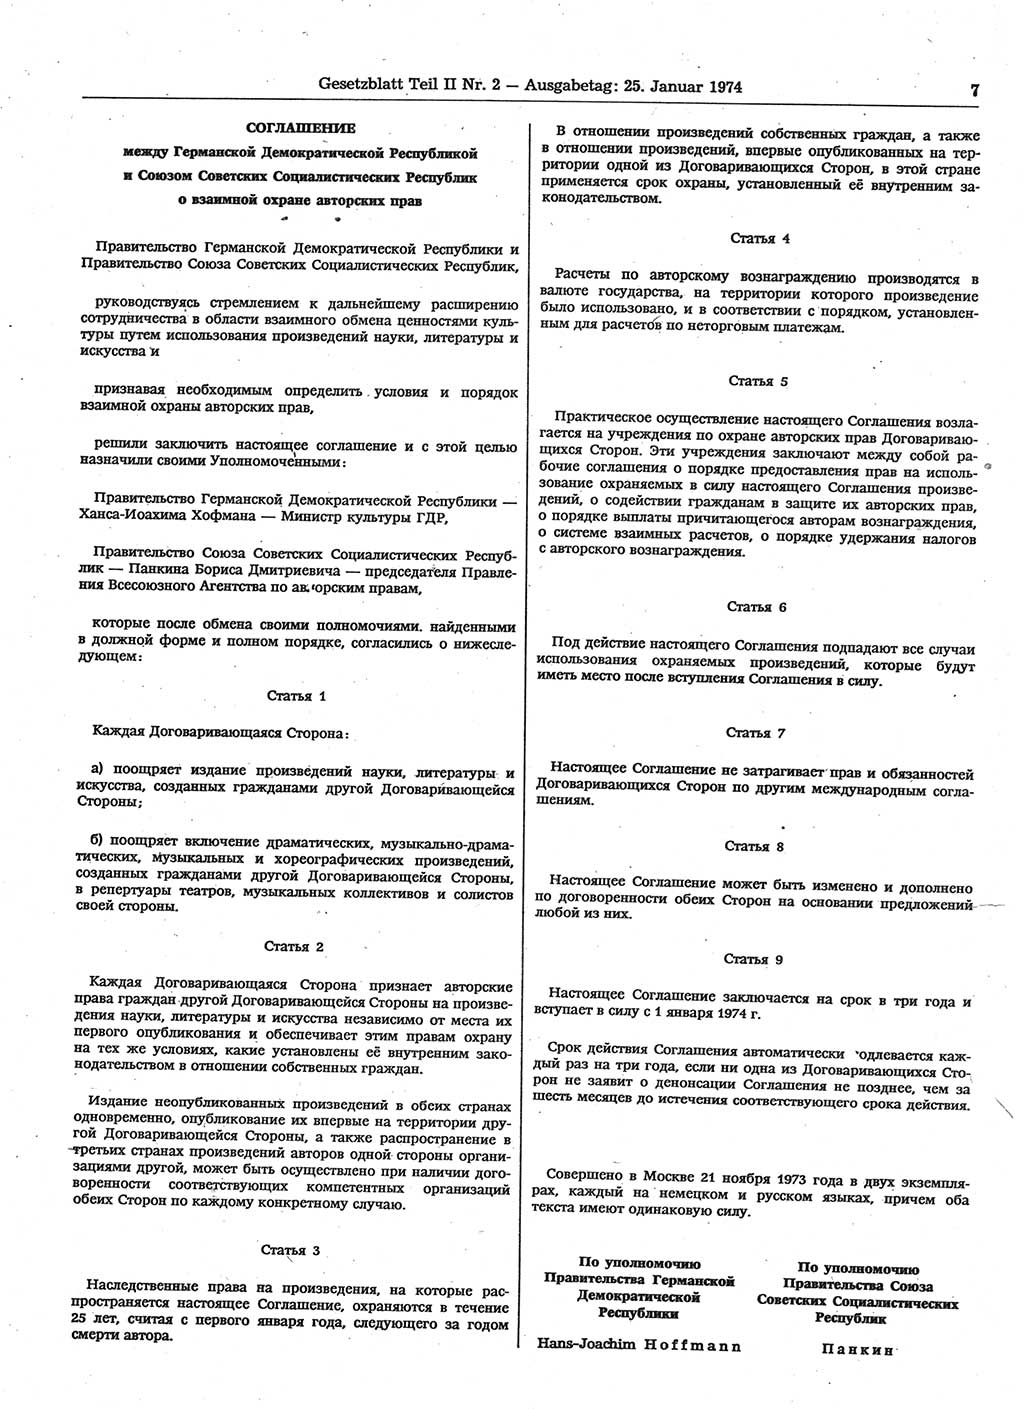 Gesetzblatt (GBl.) der Deutschen Demokratischen Republik (DDR) Teil ⅠⅠ 1974, Seite 7 (GBl. DDR ⅠⅠ 1974, S. 7)